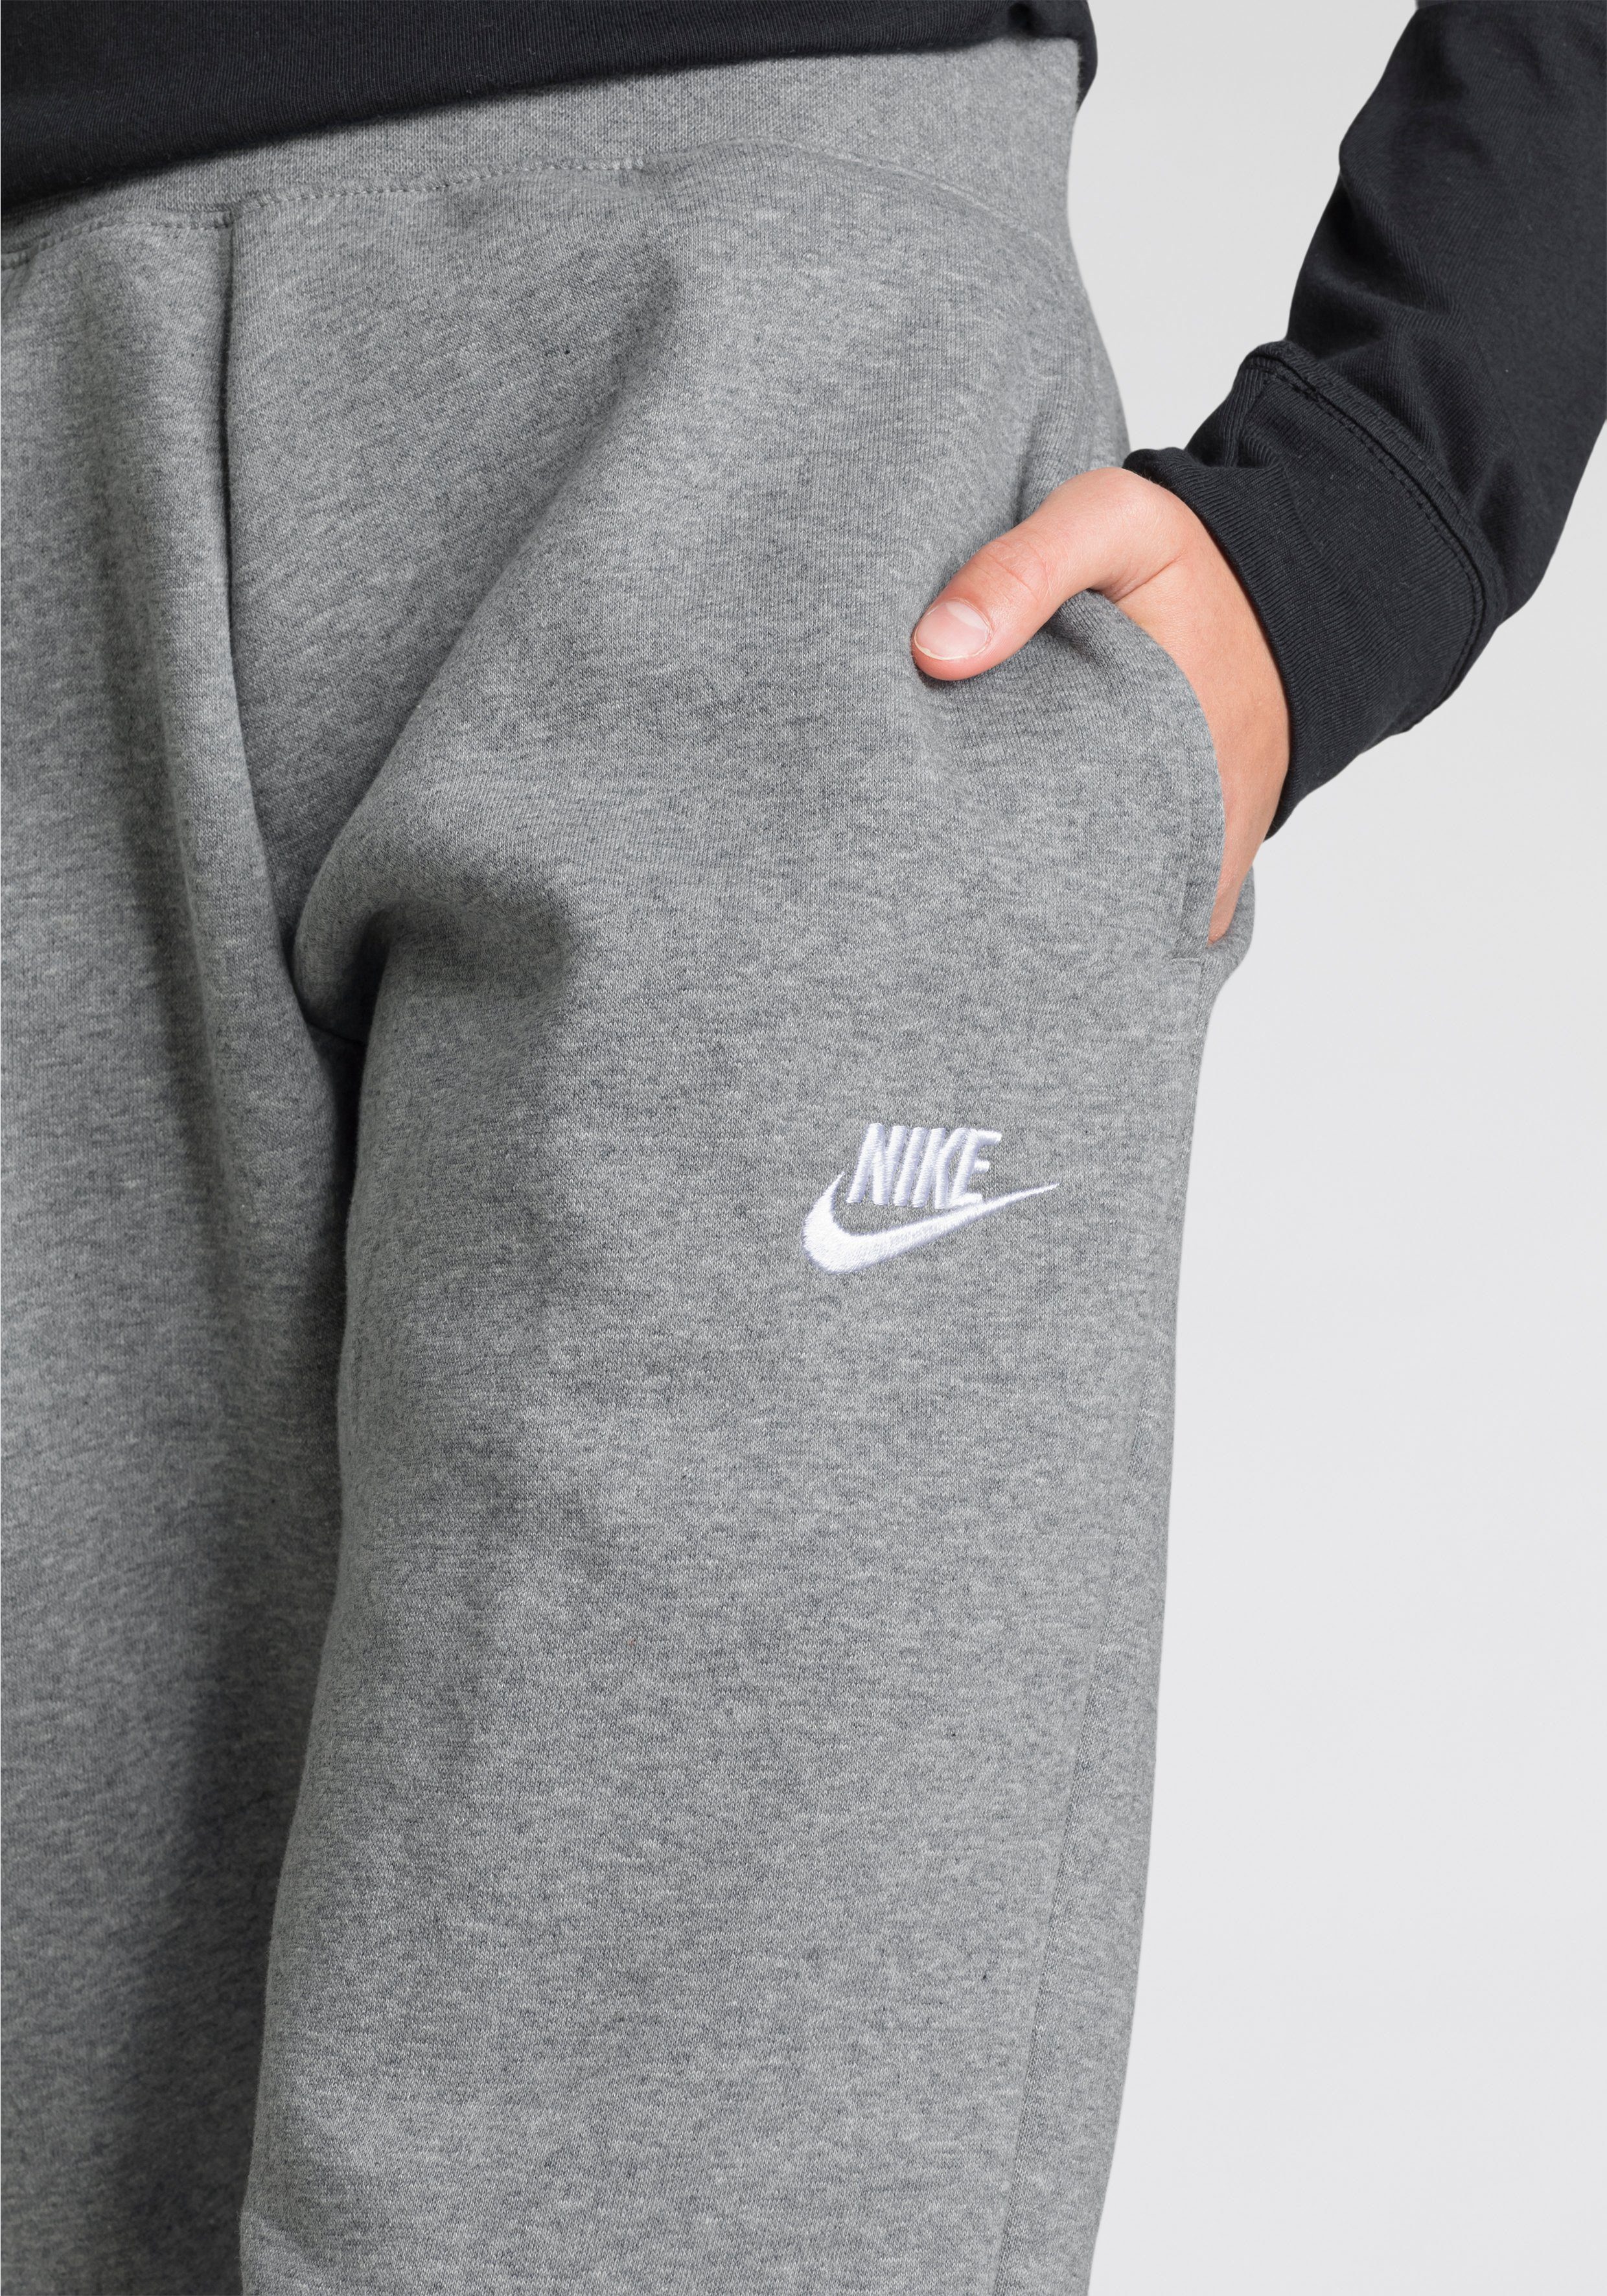 Nike Sportswear Jogginghose Club (Girls) Kids' Big Pants grau-meliert Fleece